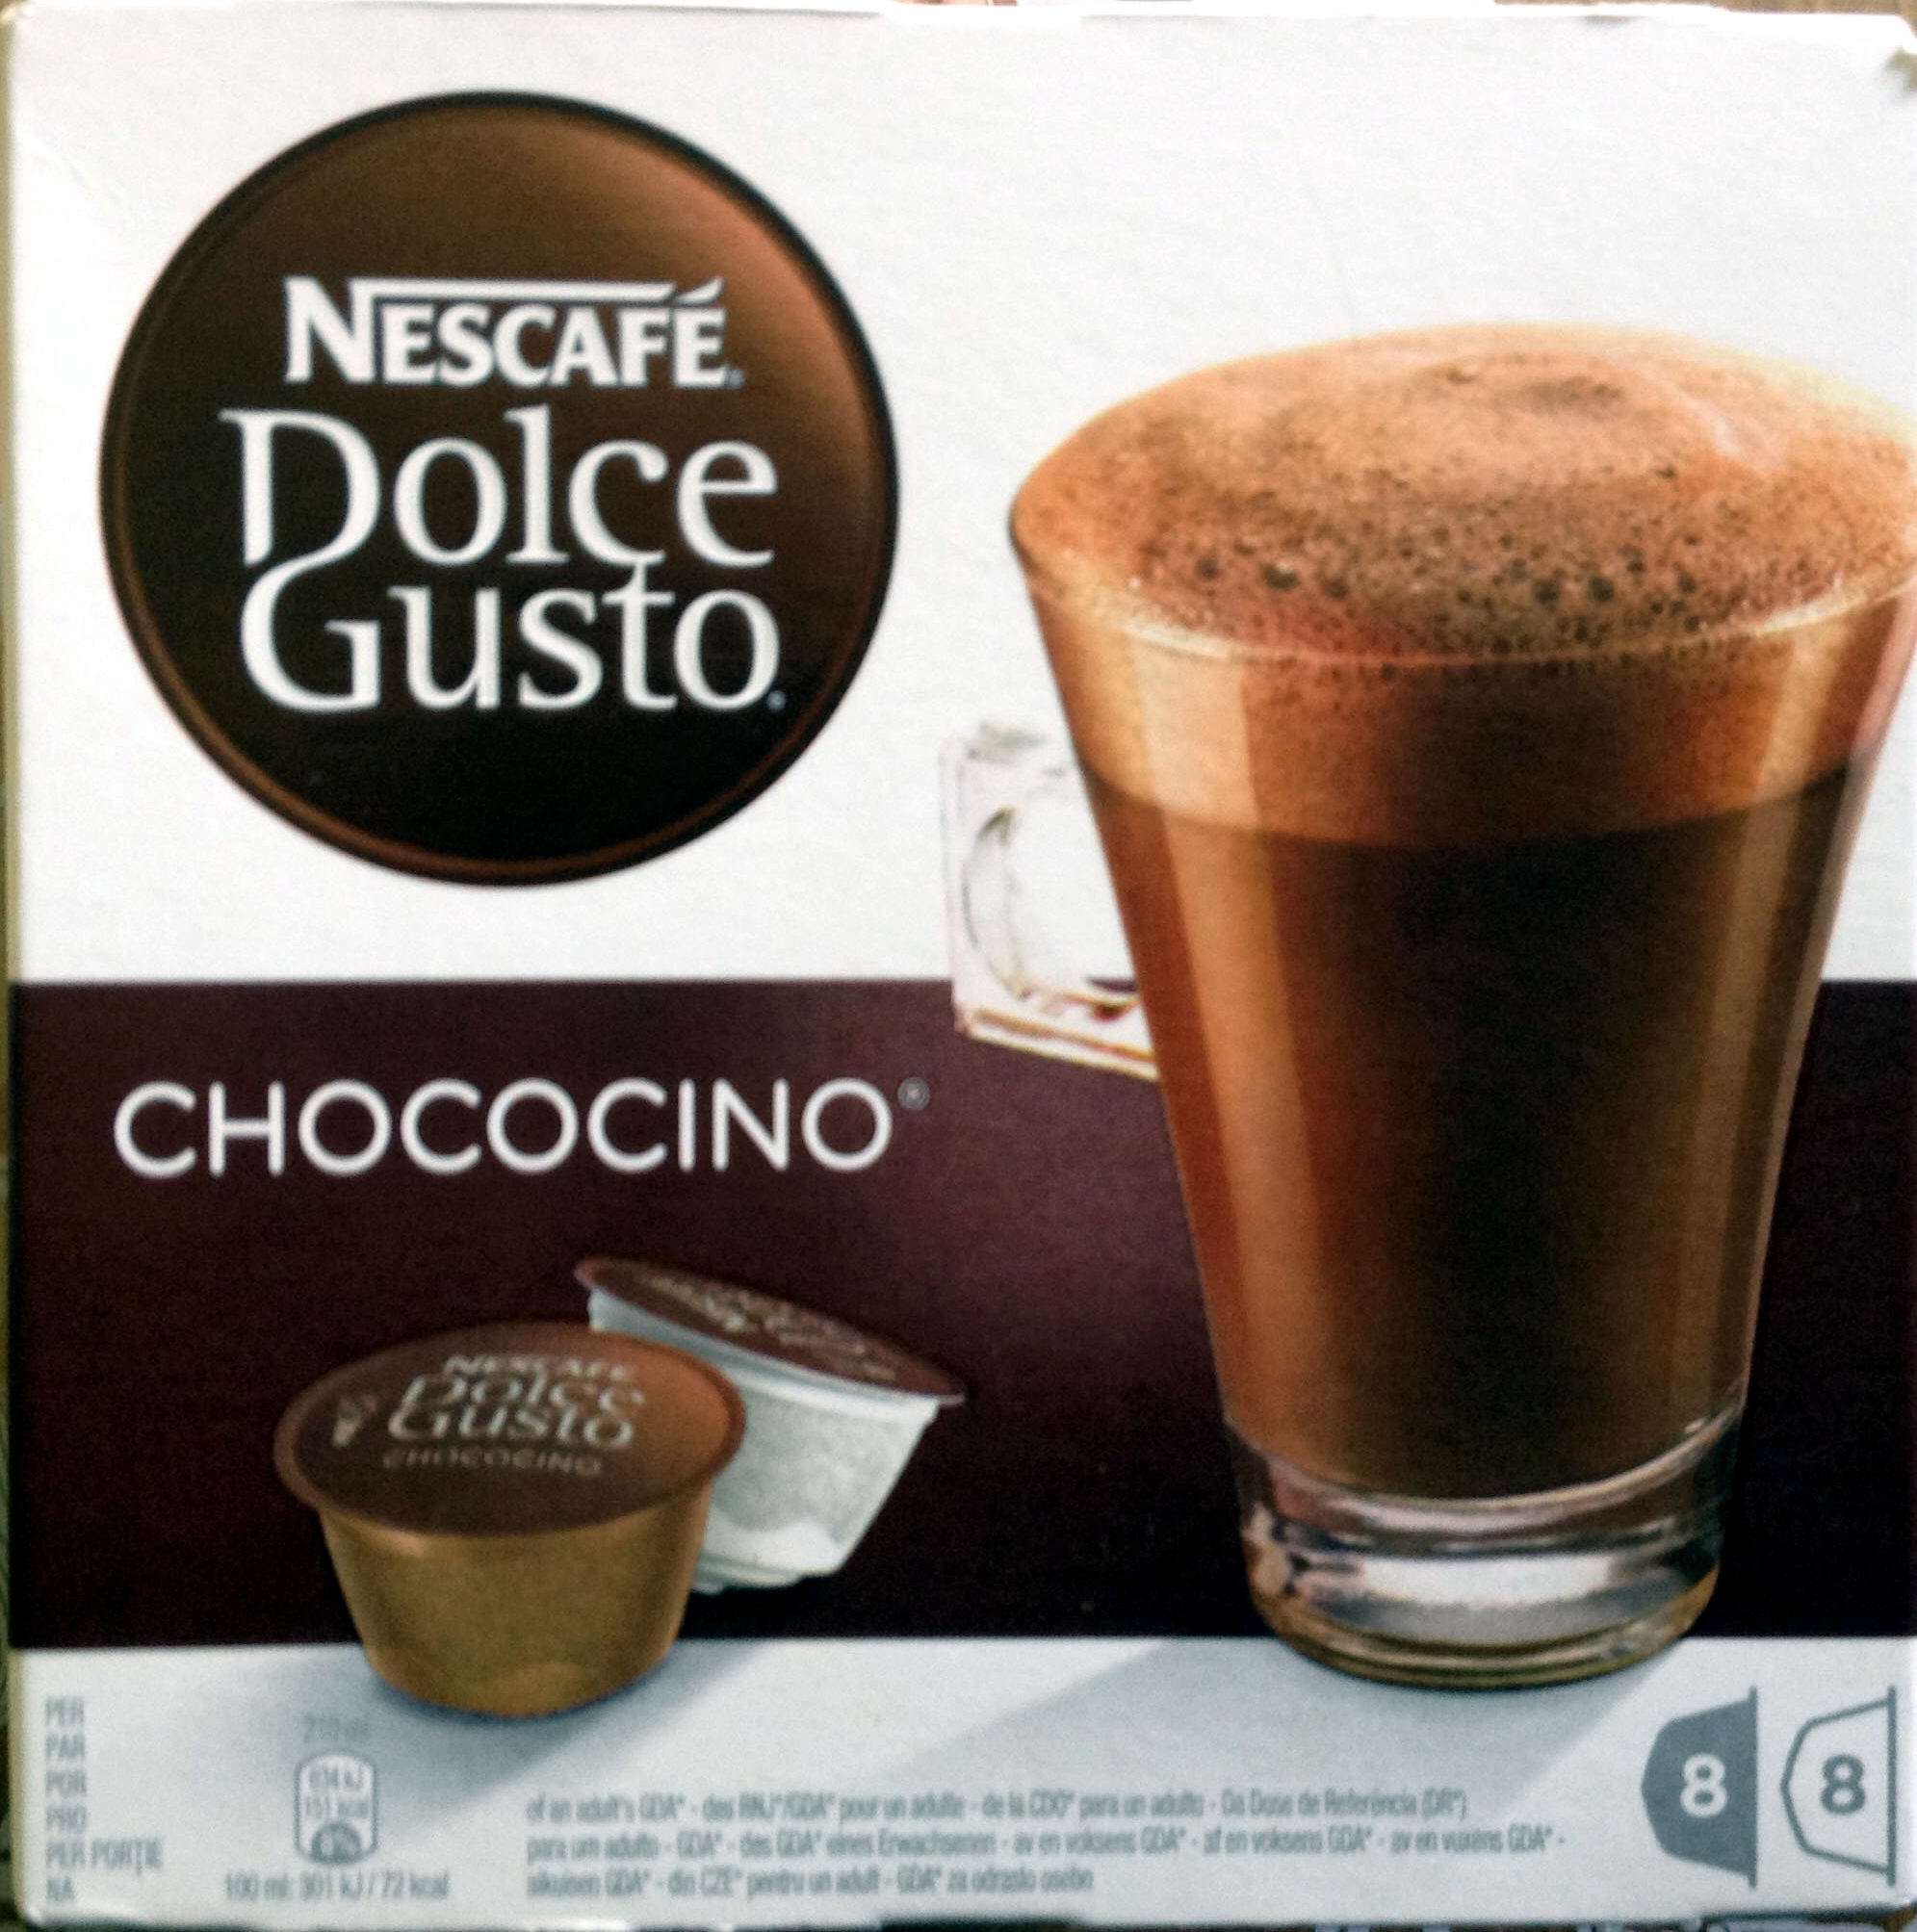 Dolce gusto - Chococino - Chocolat en poudre et lait entier en poudre avec sucre - Produkt - fr